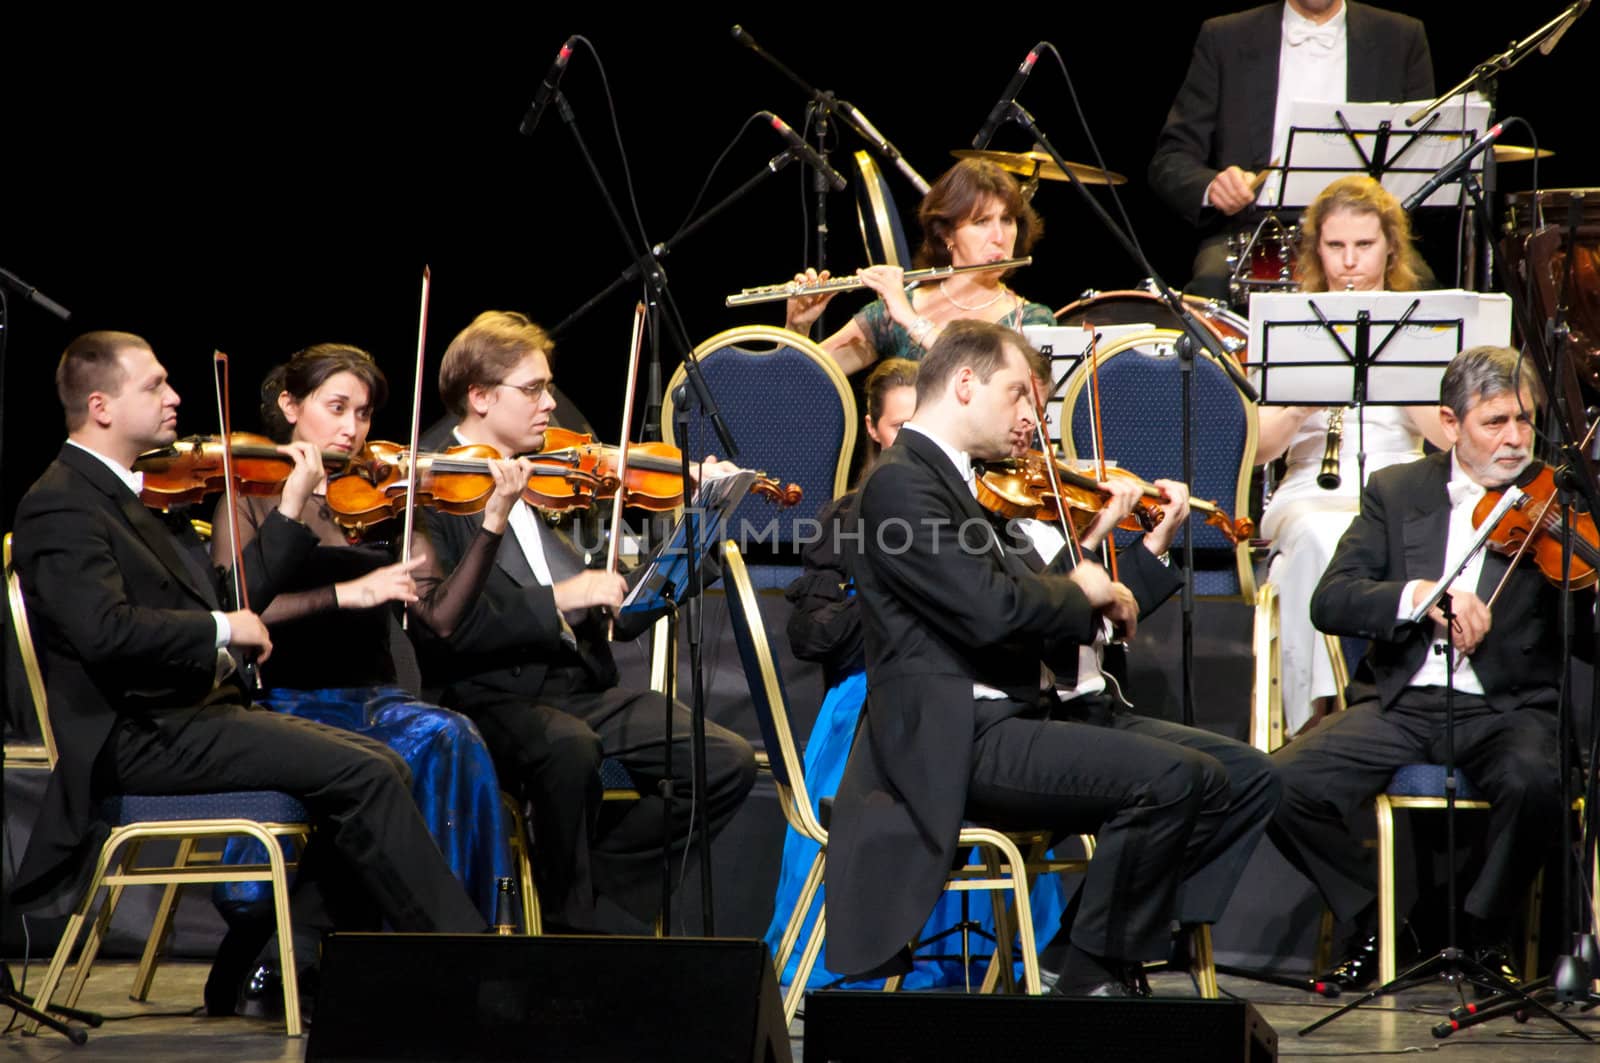 Violinists by nikolaydenisov